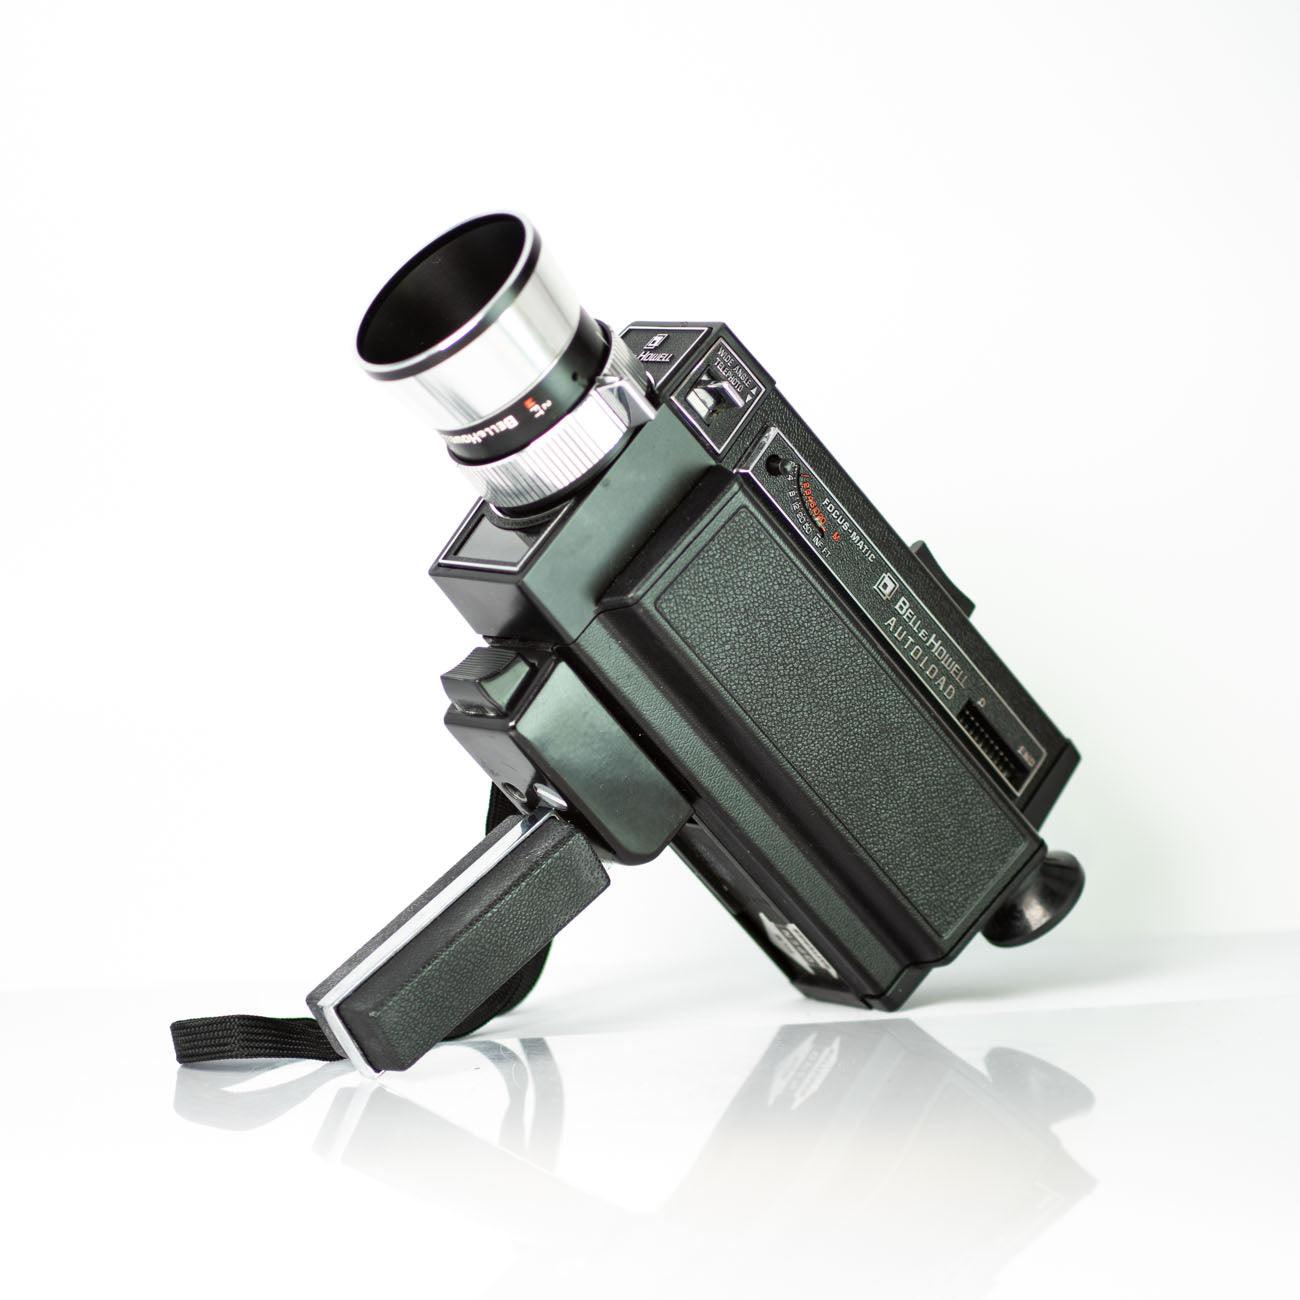 Bell & Howell autoload camera super 8